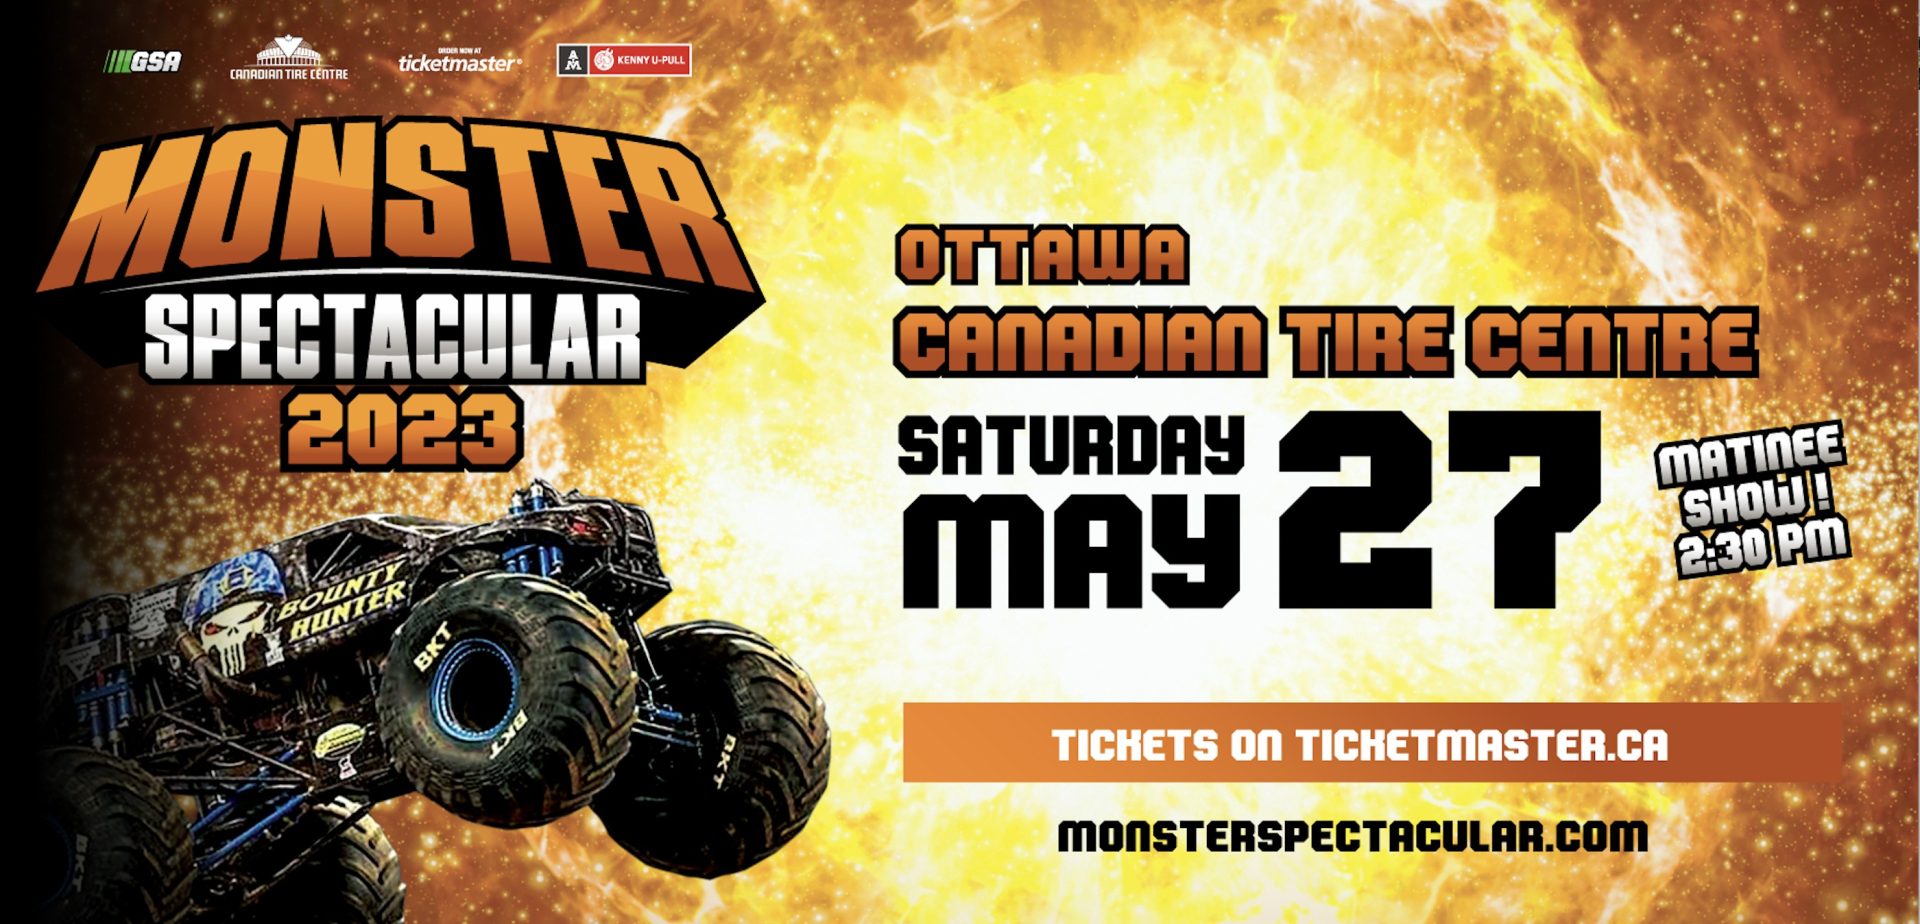 Affiche officiel de l'évènement de Monster Spectacular 2023 à jeudi